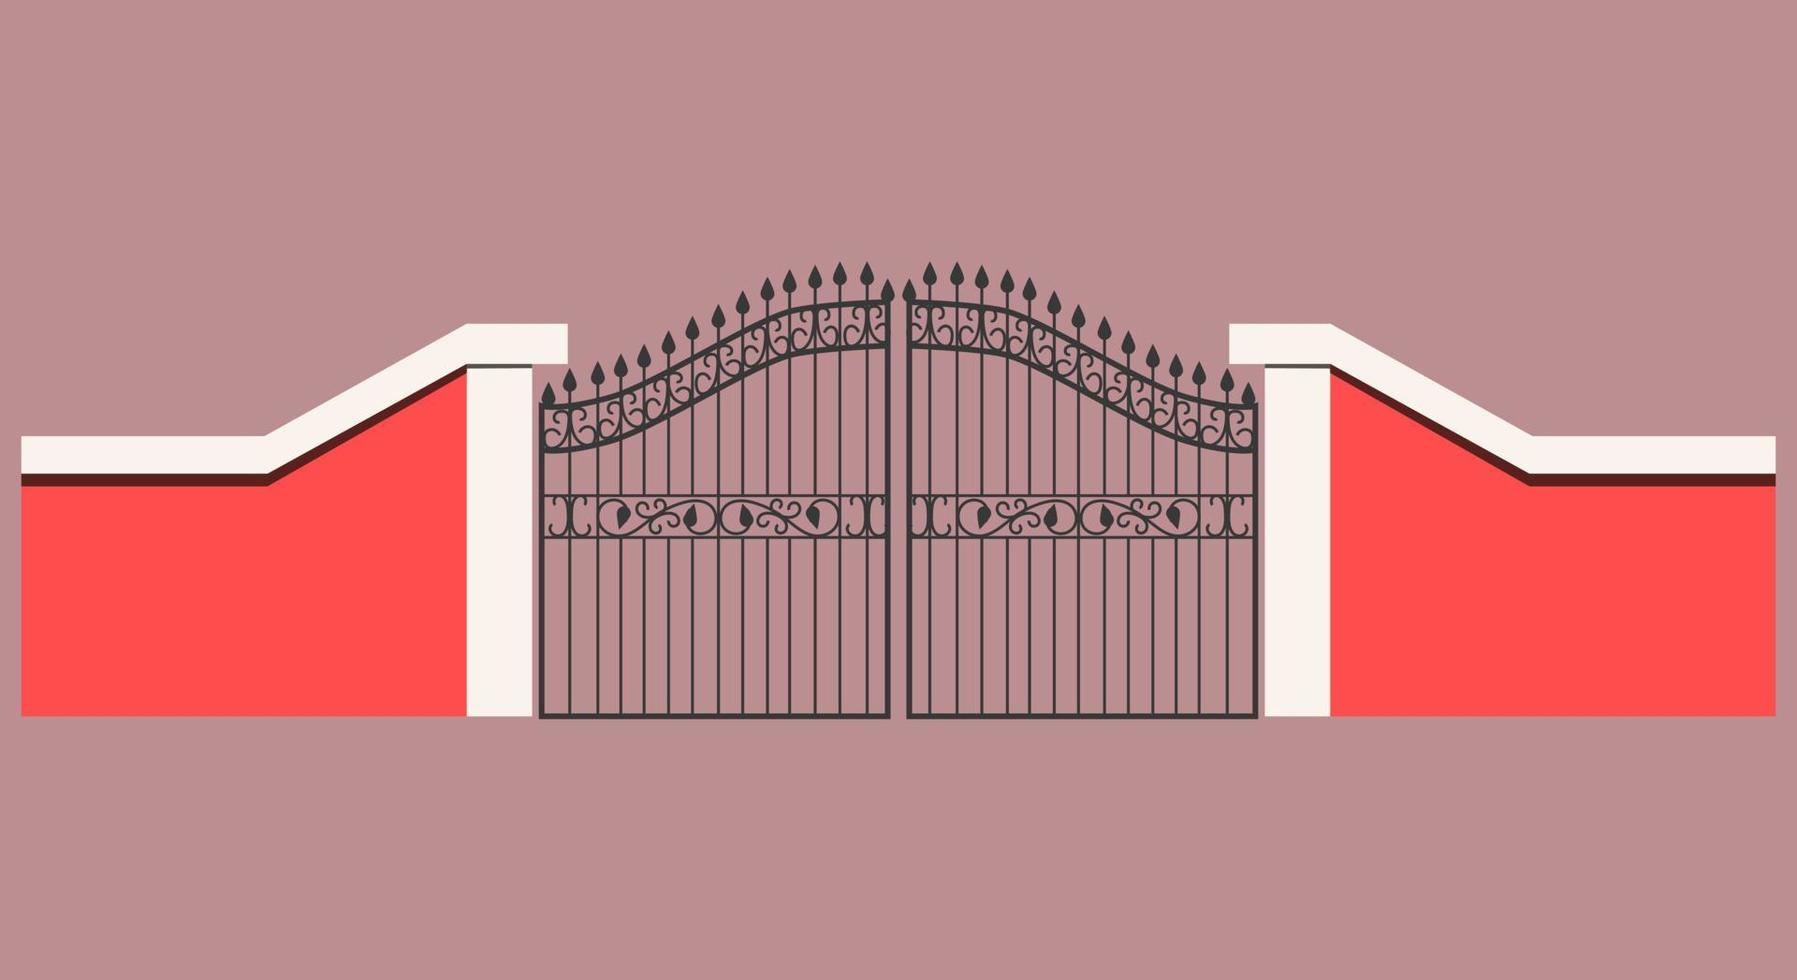 la porte d'entrée forgée est faite d'un mur de ciment rose. forgeage de fonte avec arrondis et pointes. illustration vectorielle. une grande porte métallique comme porte d'entrée. vecteur